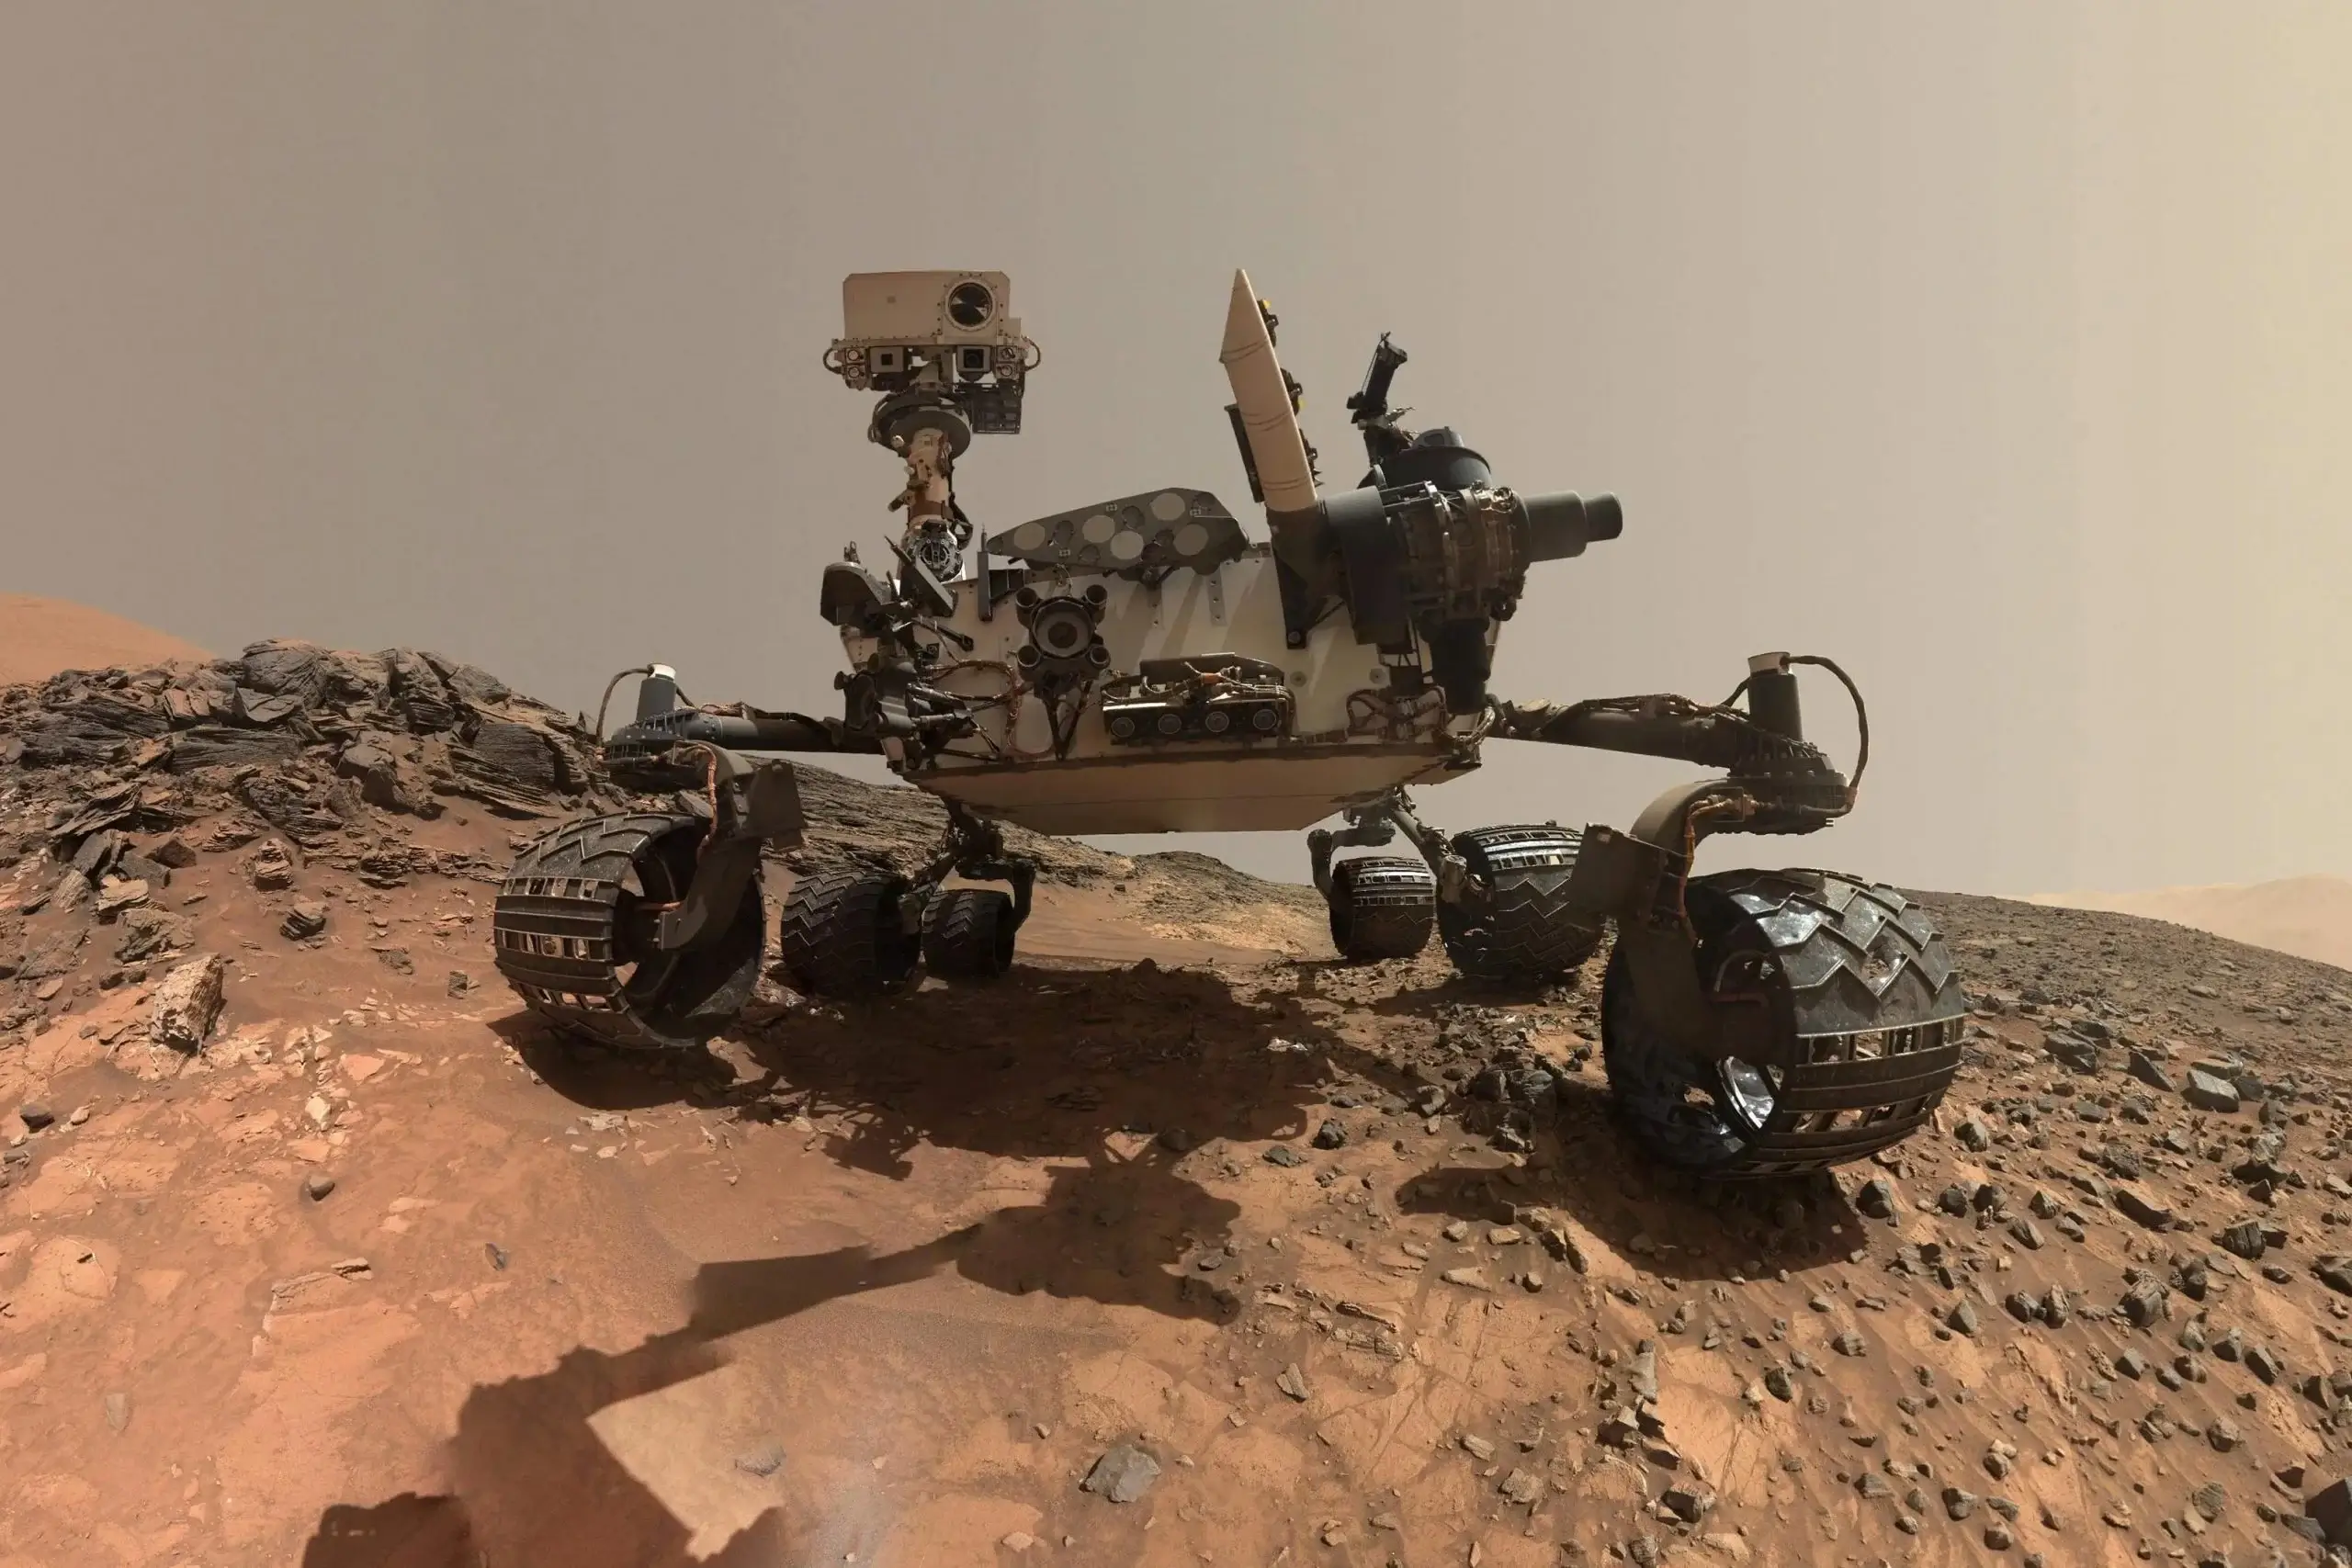 חקירת האפיק Gediz Vallis על ידי רכב המאדים קיוריוסיטי הפיקה תובנות חדשות על עברו של כוכב הלכת, וחשפה היסטוריה אפשרית של זרימות מים ושינויי אקלים שמאתגרים דעות קודמות על הצחיחות של המאדים. קרדיט: NASA/JPL-Caltech/MSSS